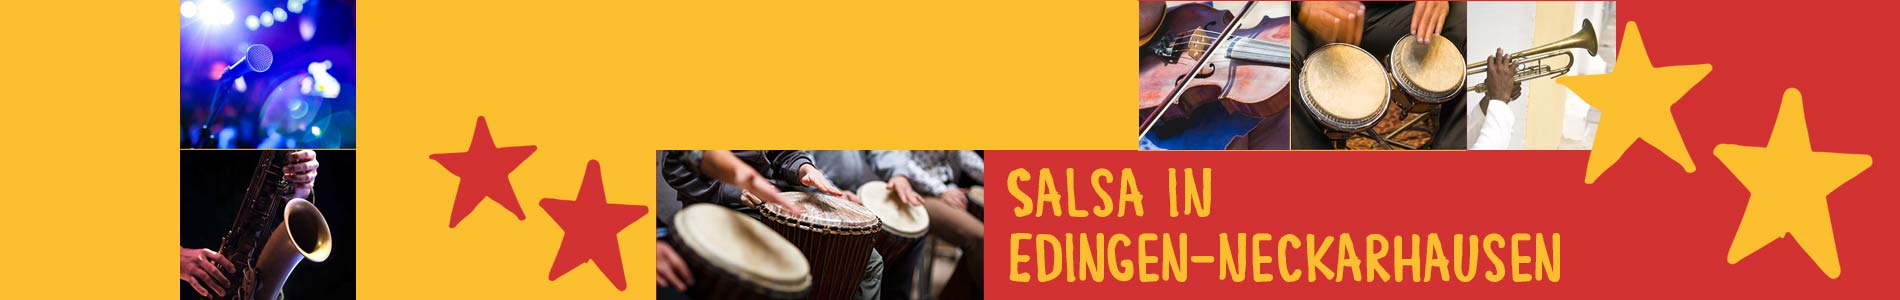 Salsa in Edingen-Neckarhausen – Salsa lernen und tanzen, Tanzkurse, Partys, Veranstaltungen